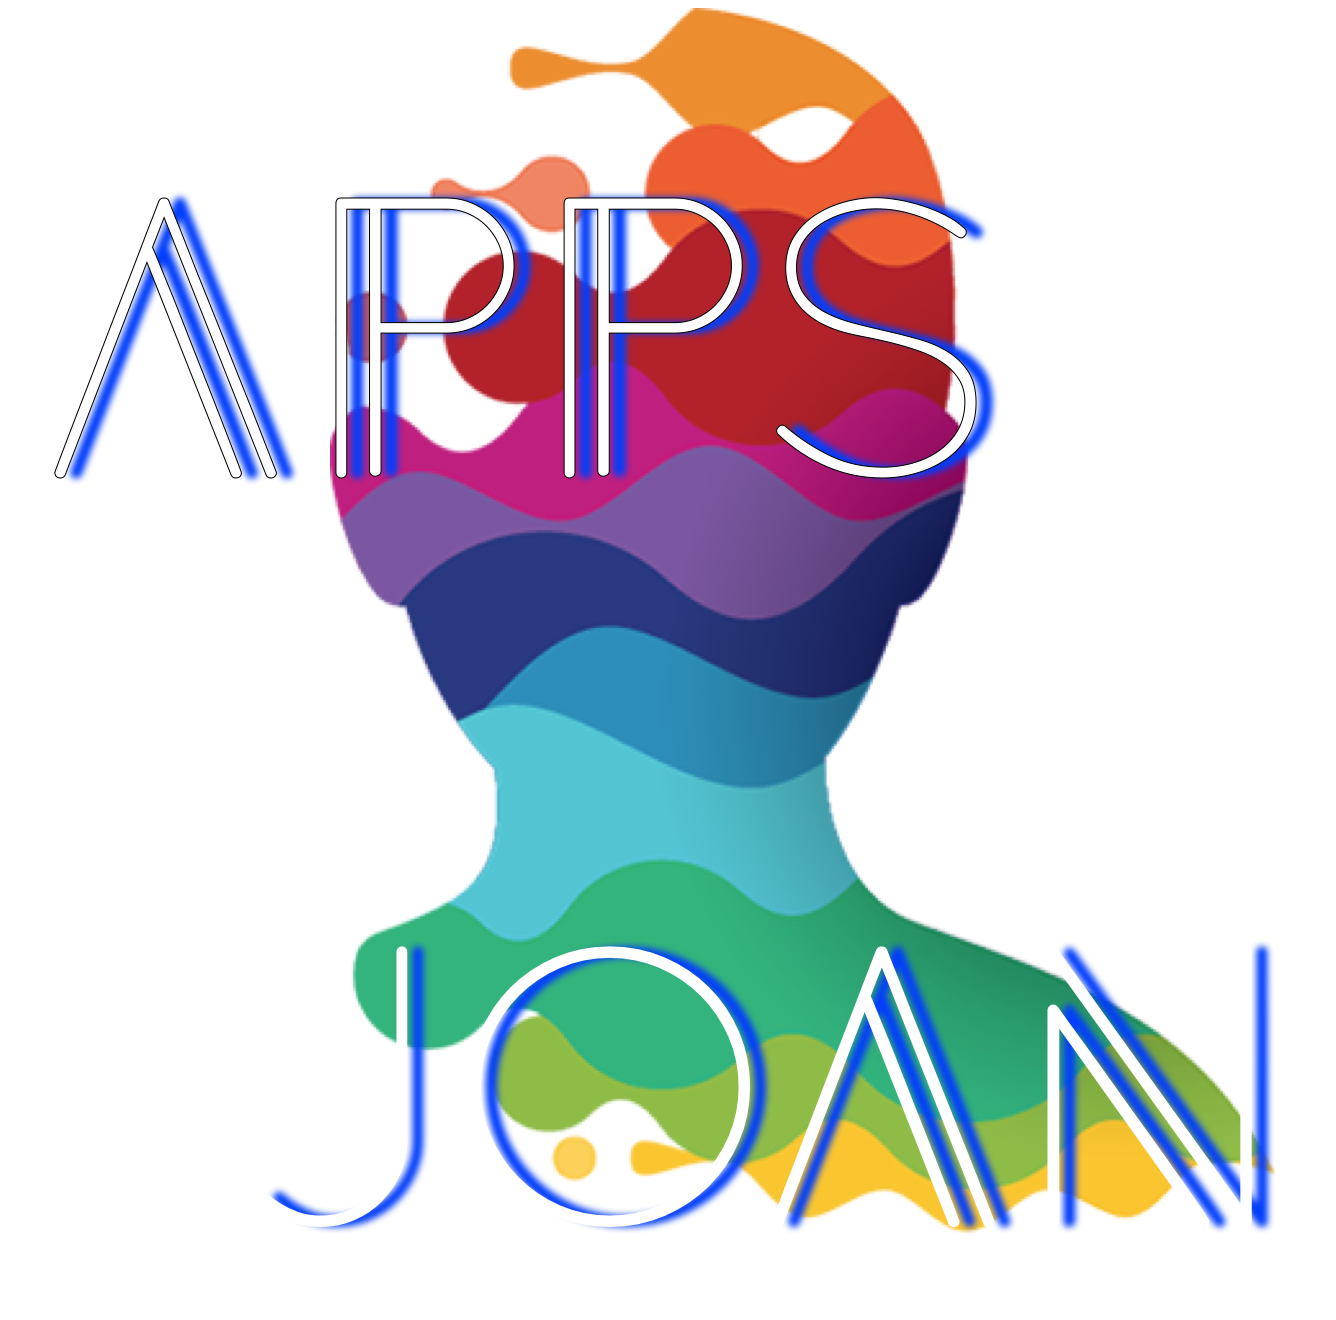 Joan Apps logo